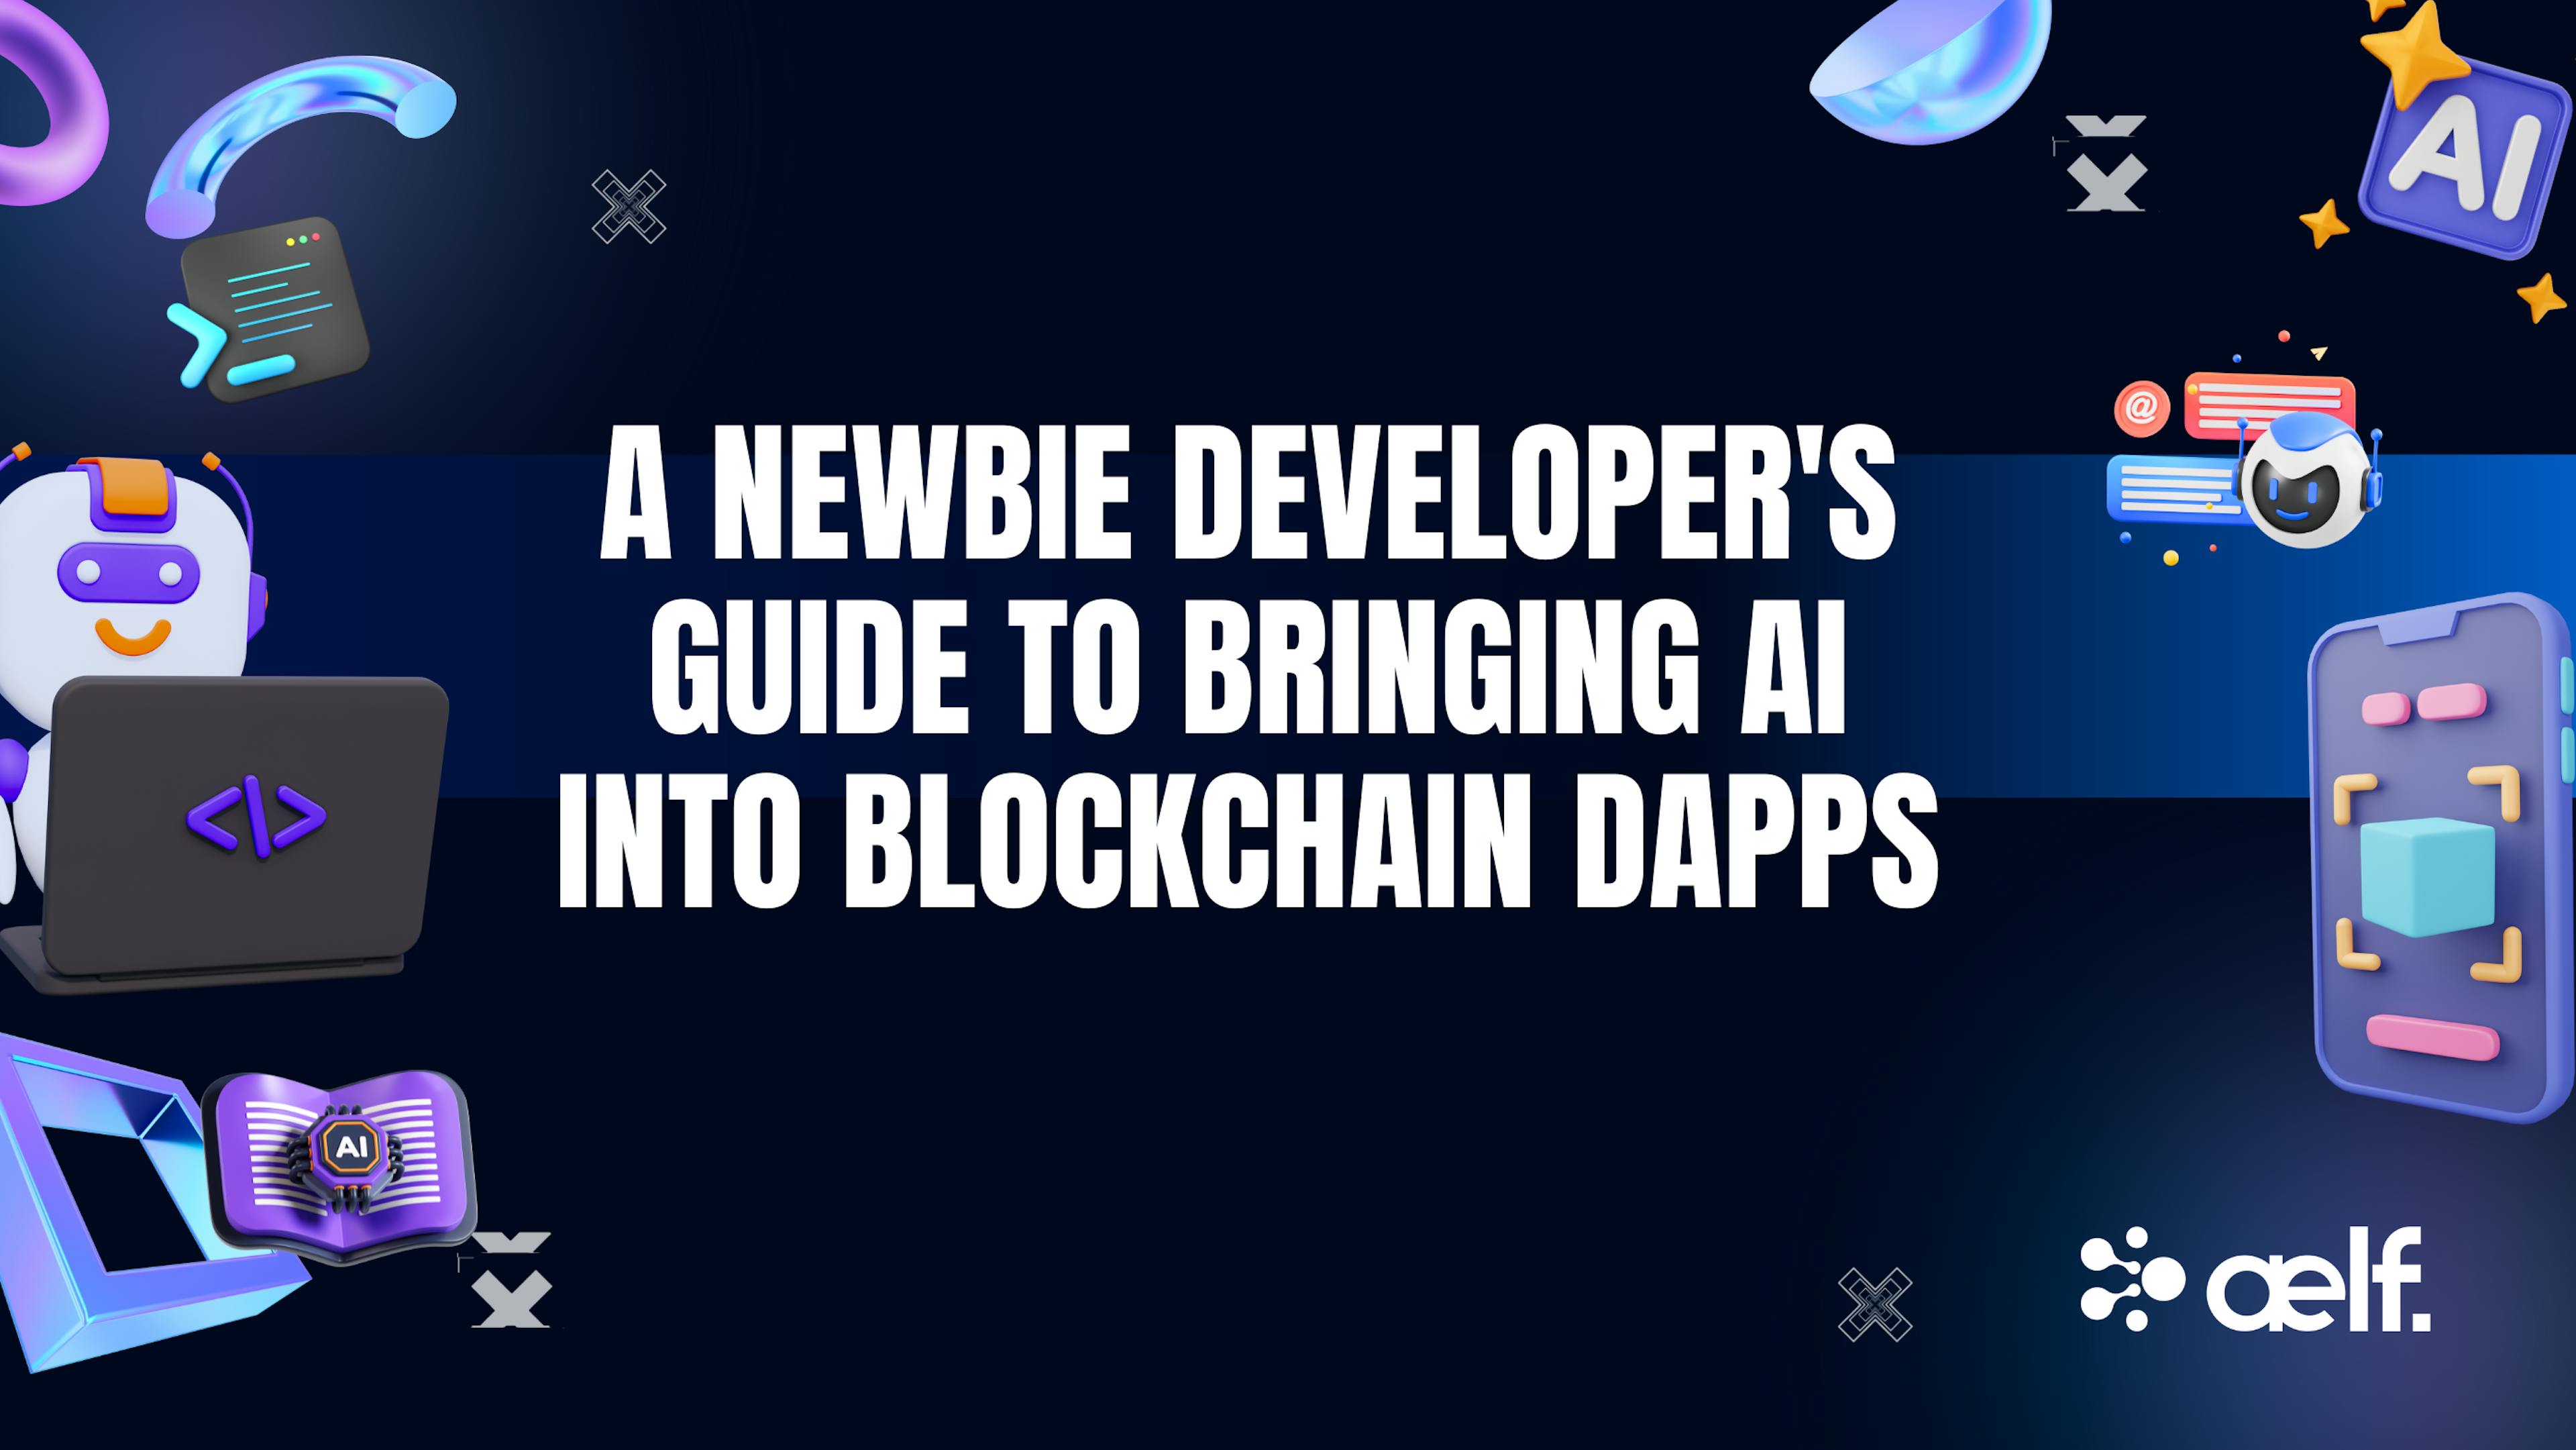 featured image - Guia do desenvolvedor novato para trazer IA para dApps Blockchain